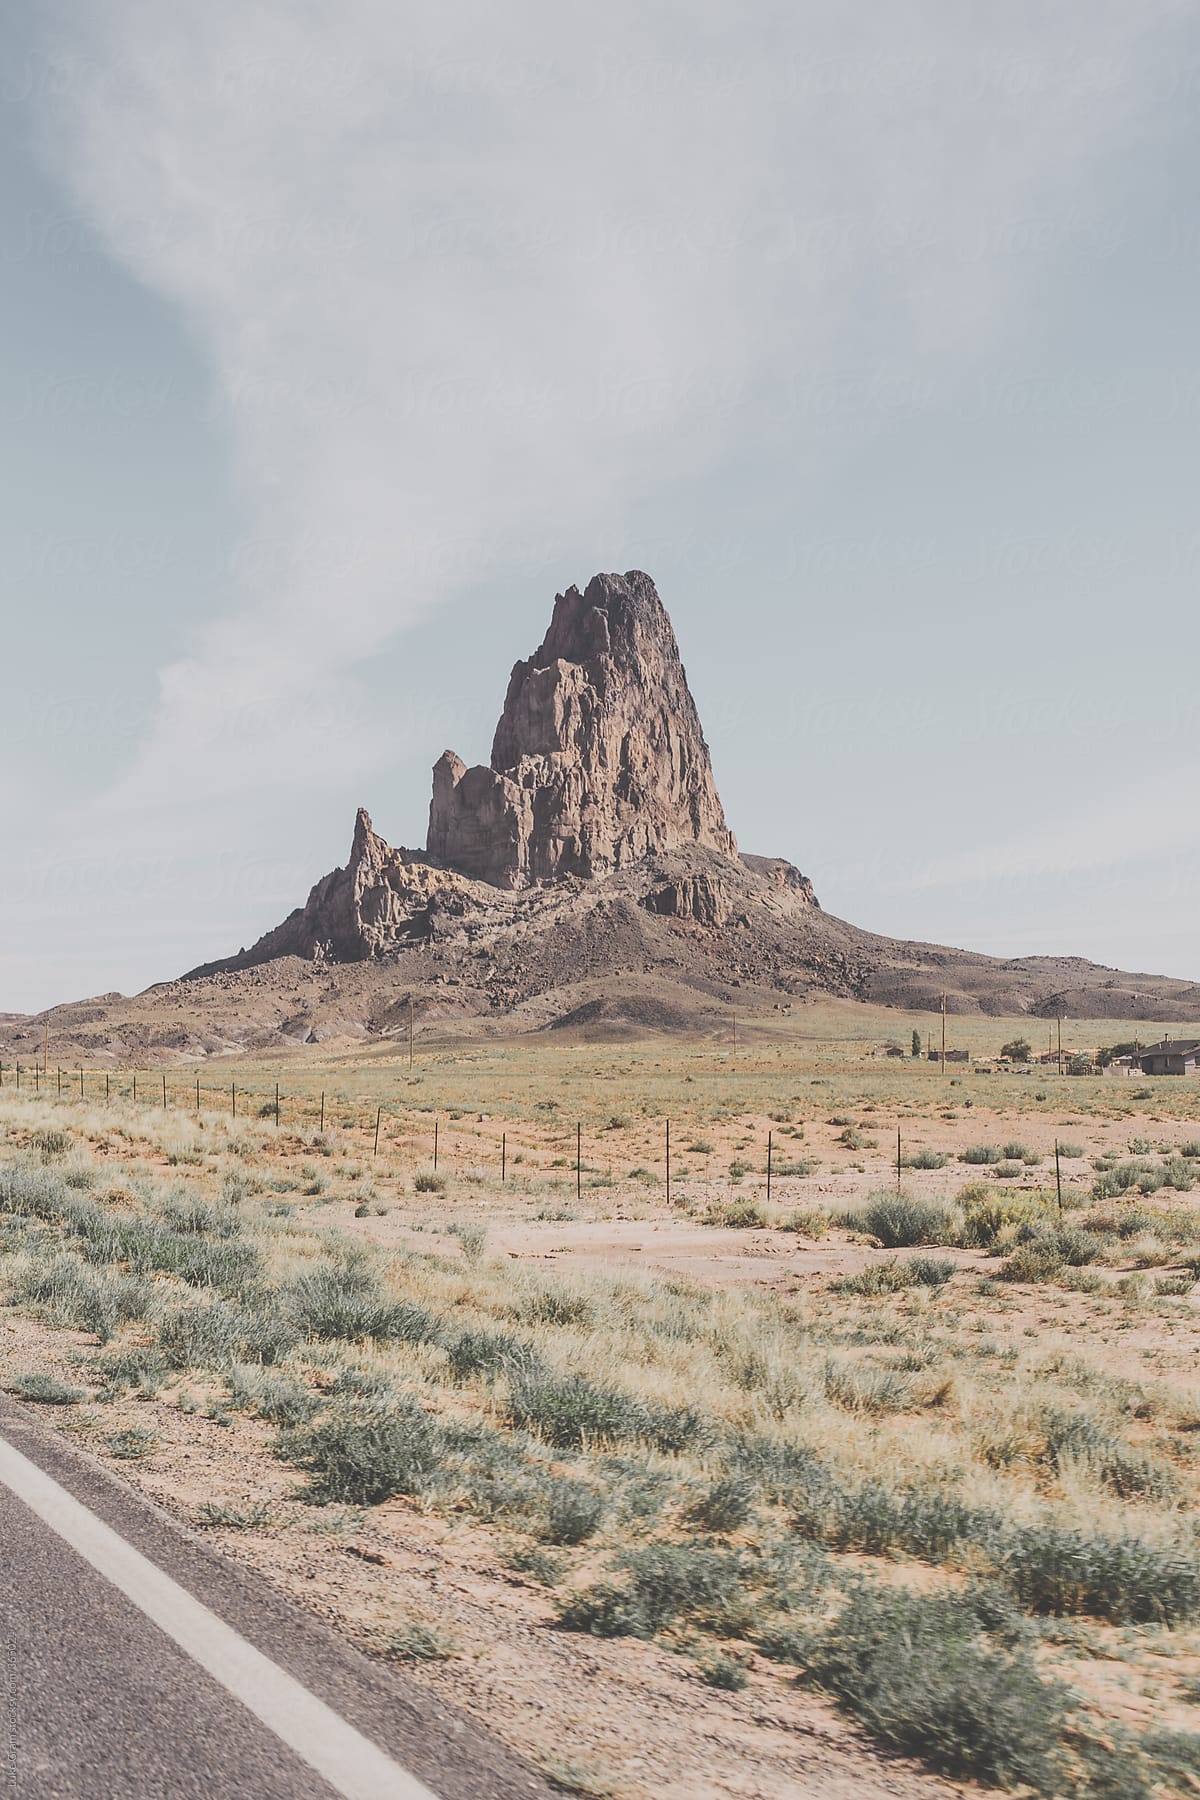 Roadtrip across the desert in America